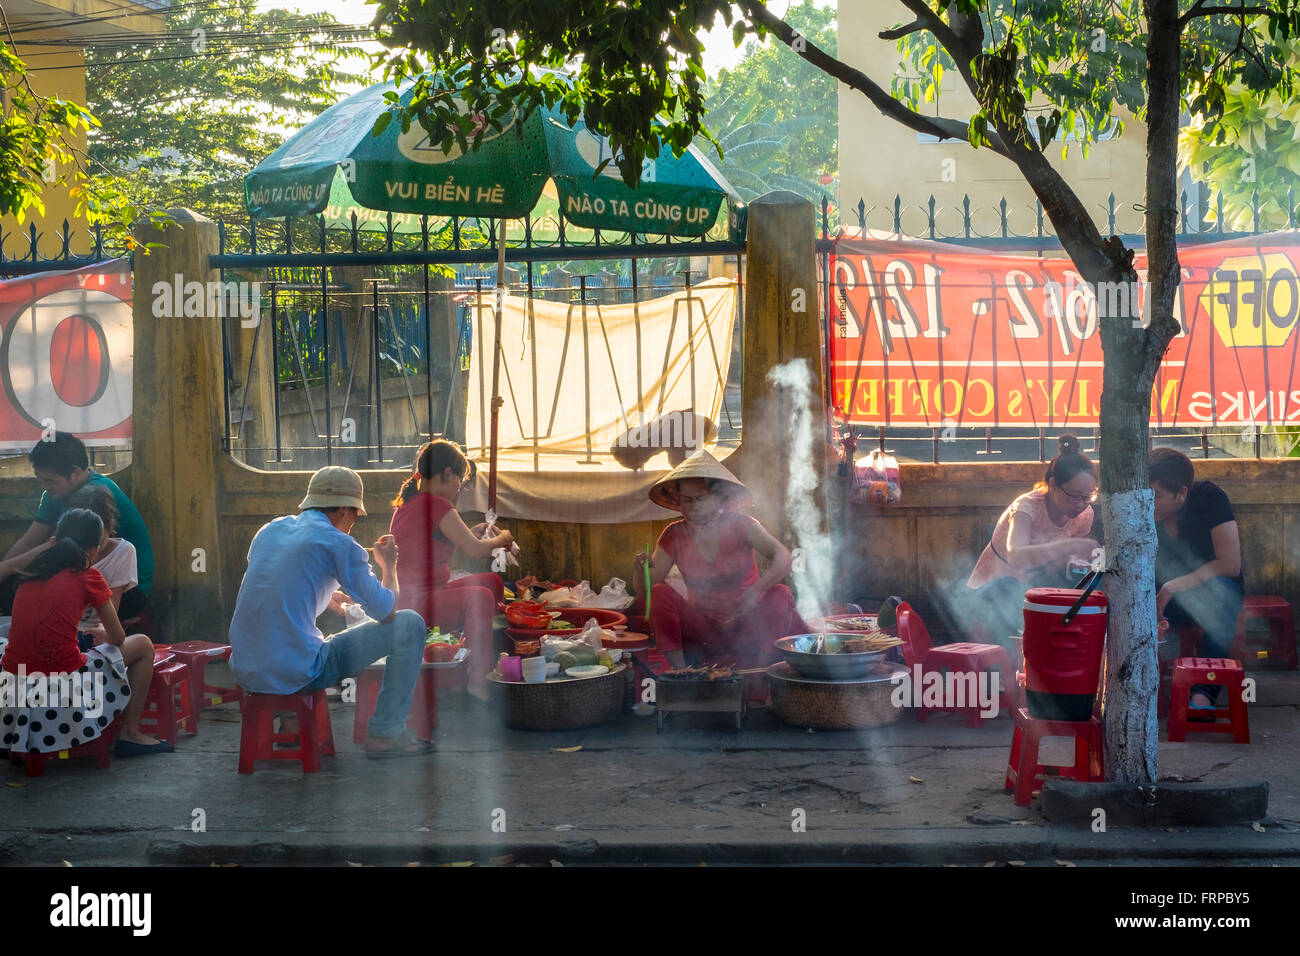 Menschen Essen bei street Food stall auf dem Bürgersteig in Hoi an, Vietnam Stockfoto